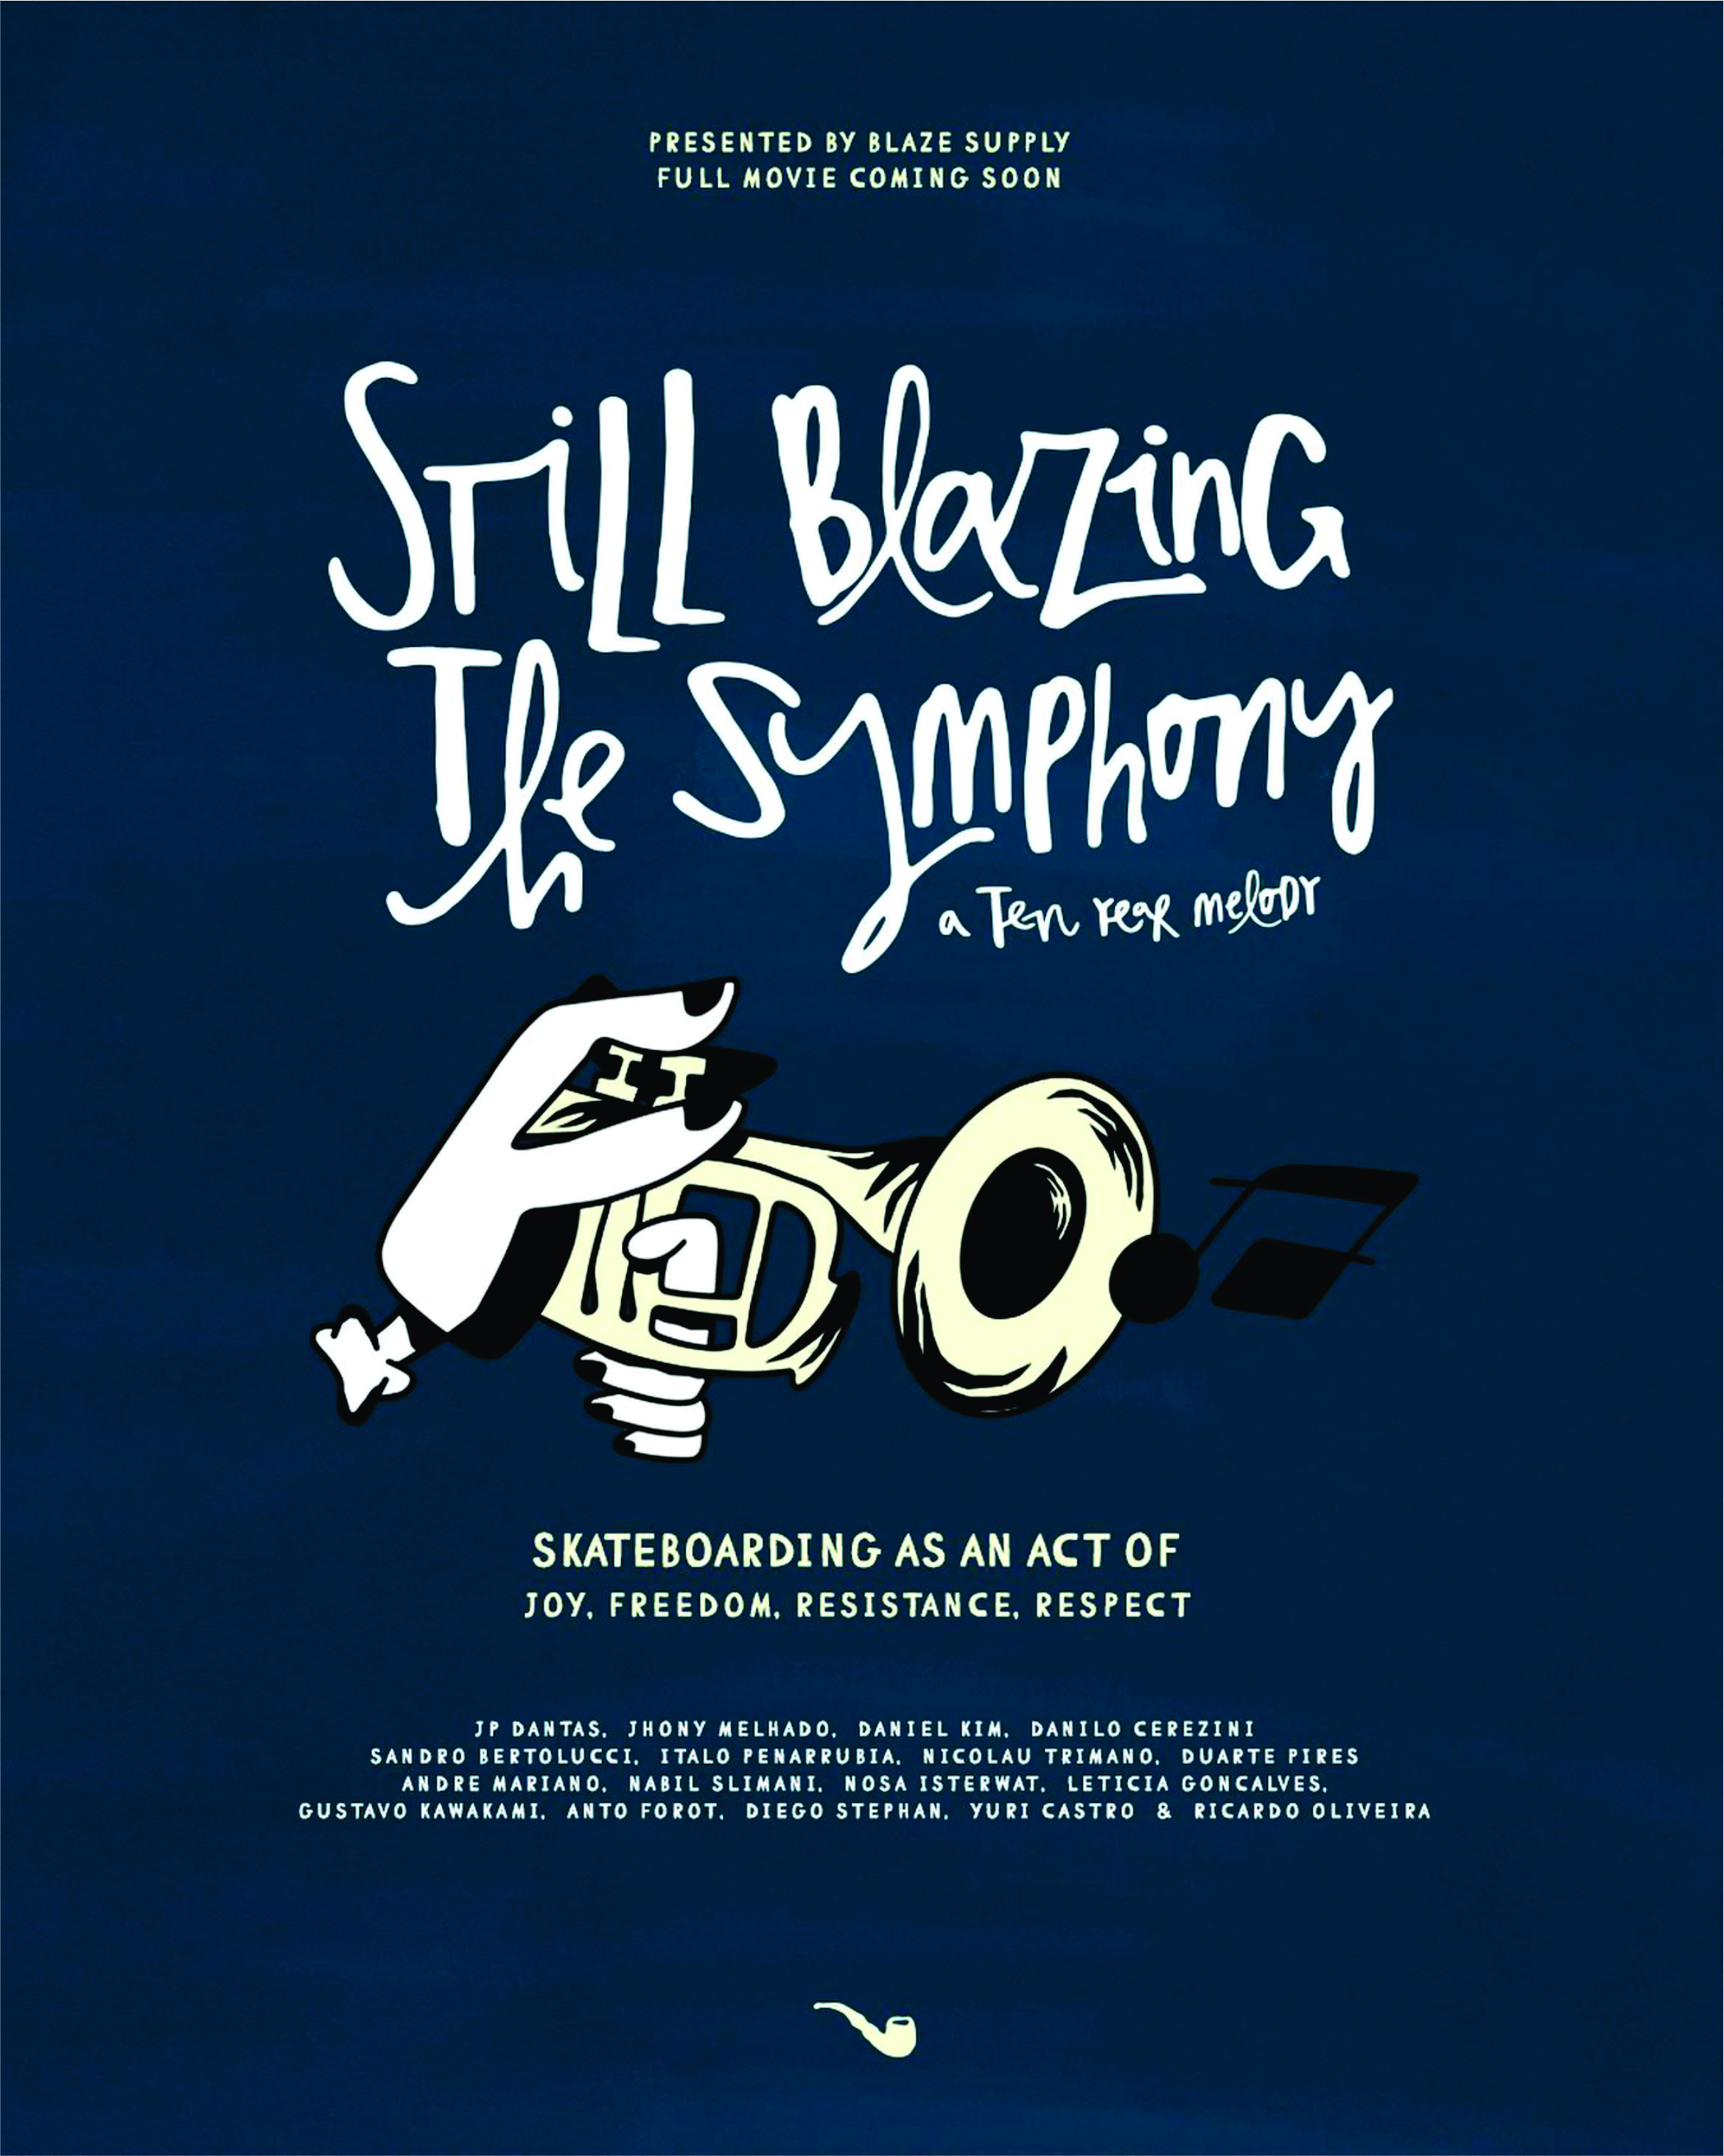 Blaze Supply - Still Blazin' - The Symphony cover